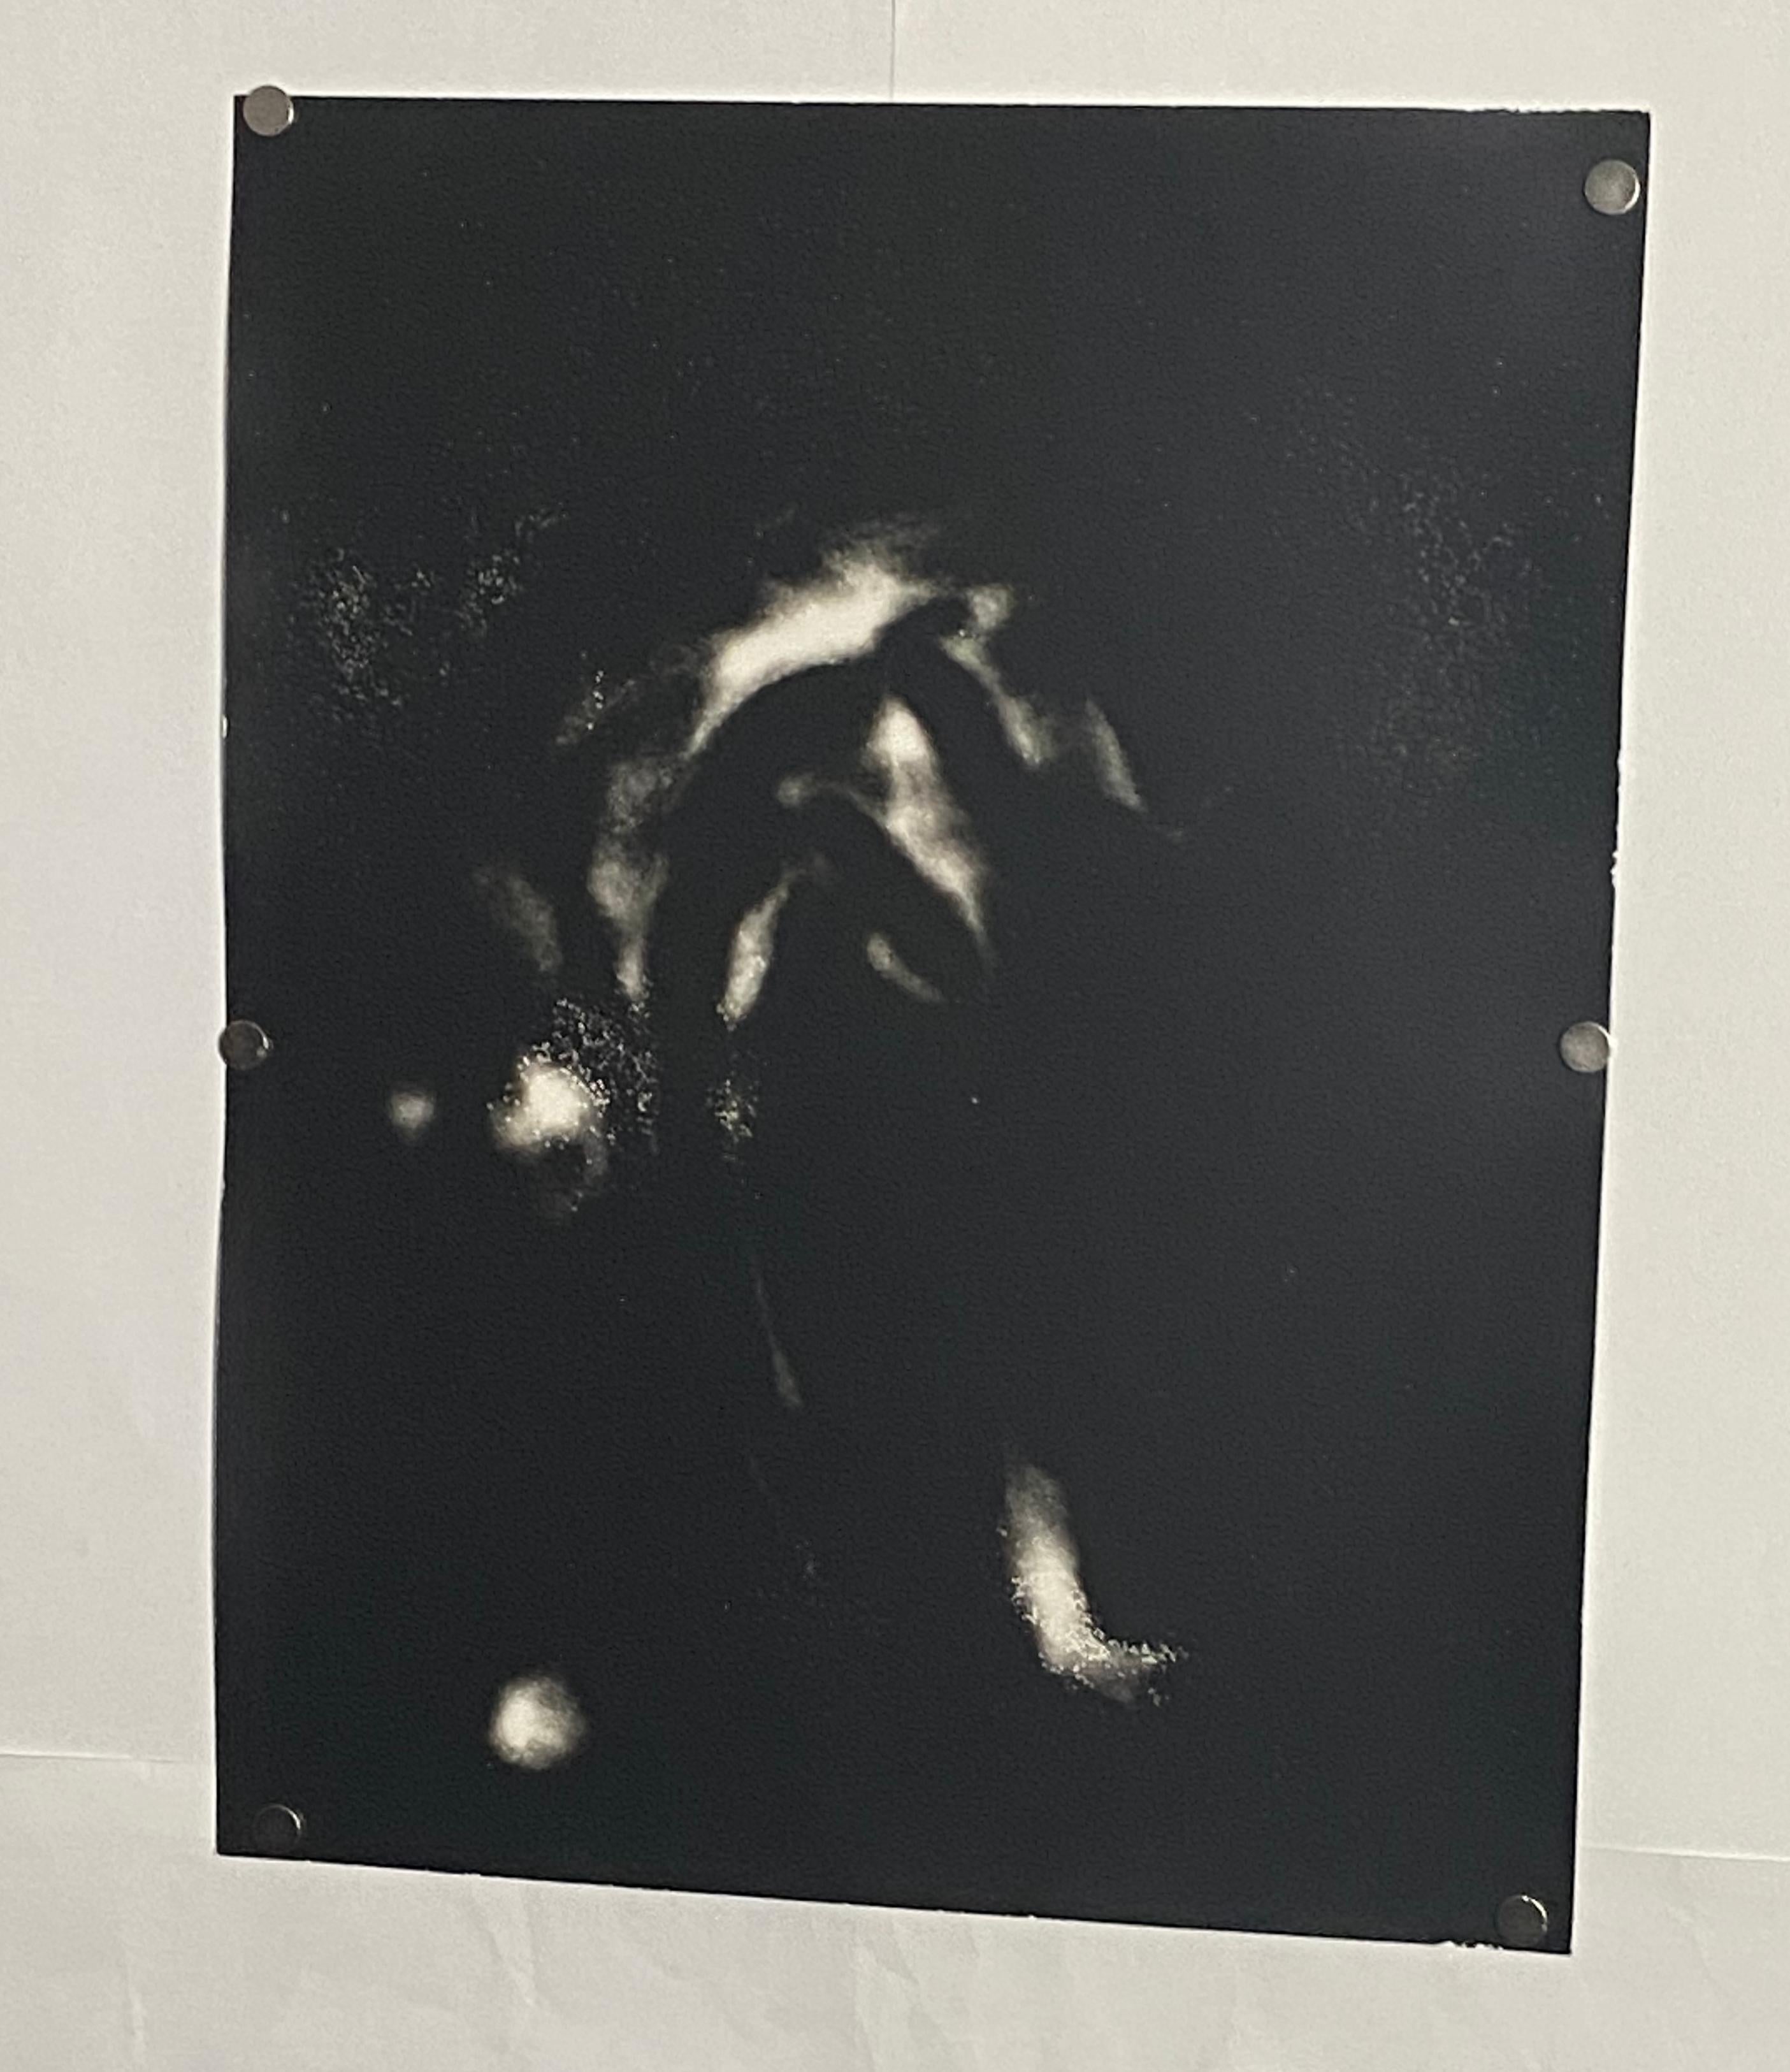 Interlaced - einzigartiges zeitgenössisches schwarzes und weißes analoges Fotogramm aus Silber gelatin (Zeitgenössisch), Photograph, von Kimberly Schneider Photography